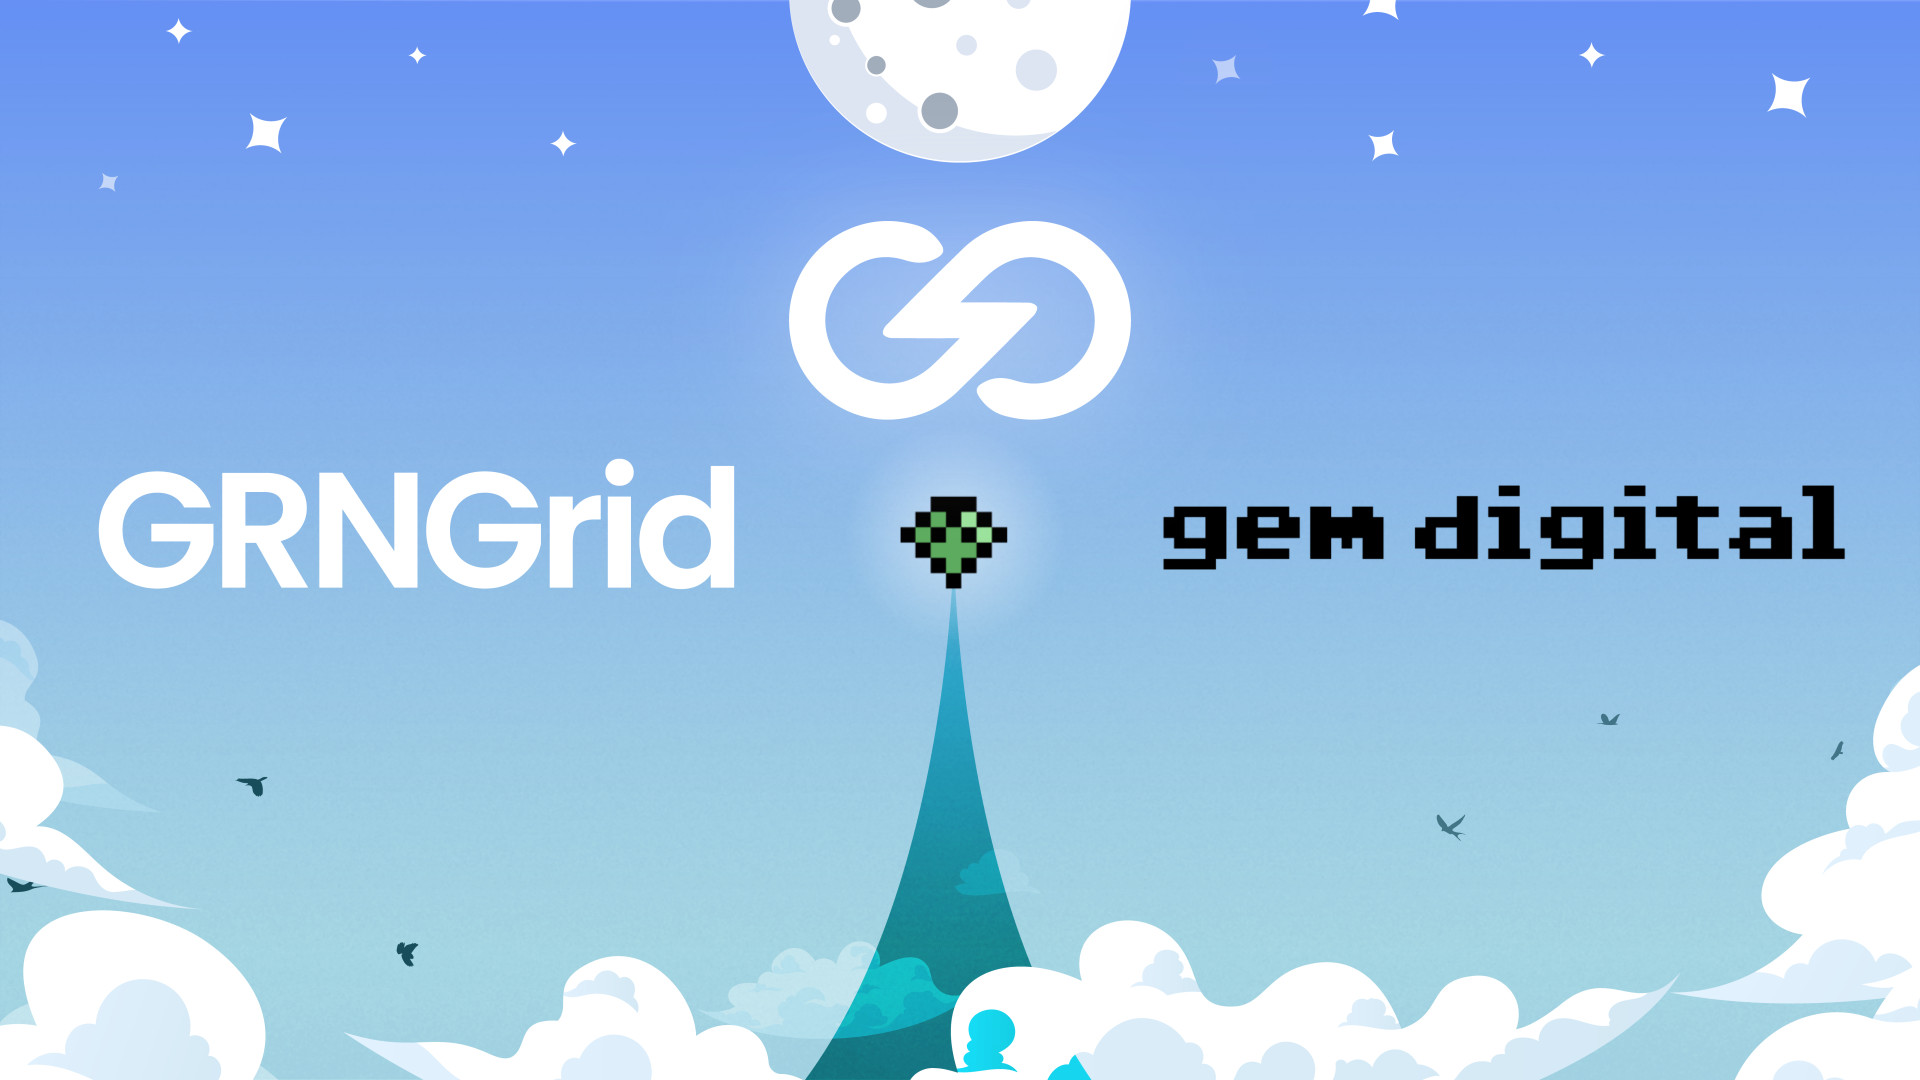 GRNGrid sichert sich 50 Millionen USD Investitionszusage von GEM Digital